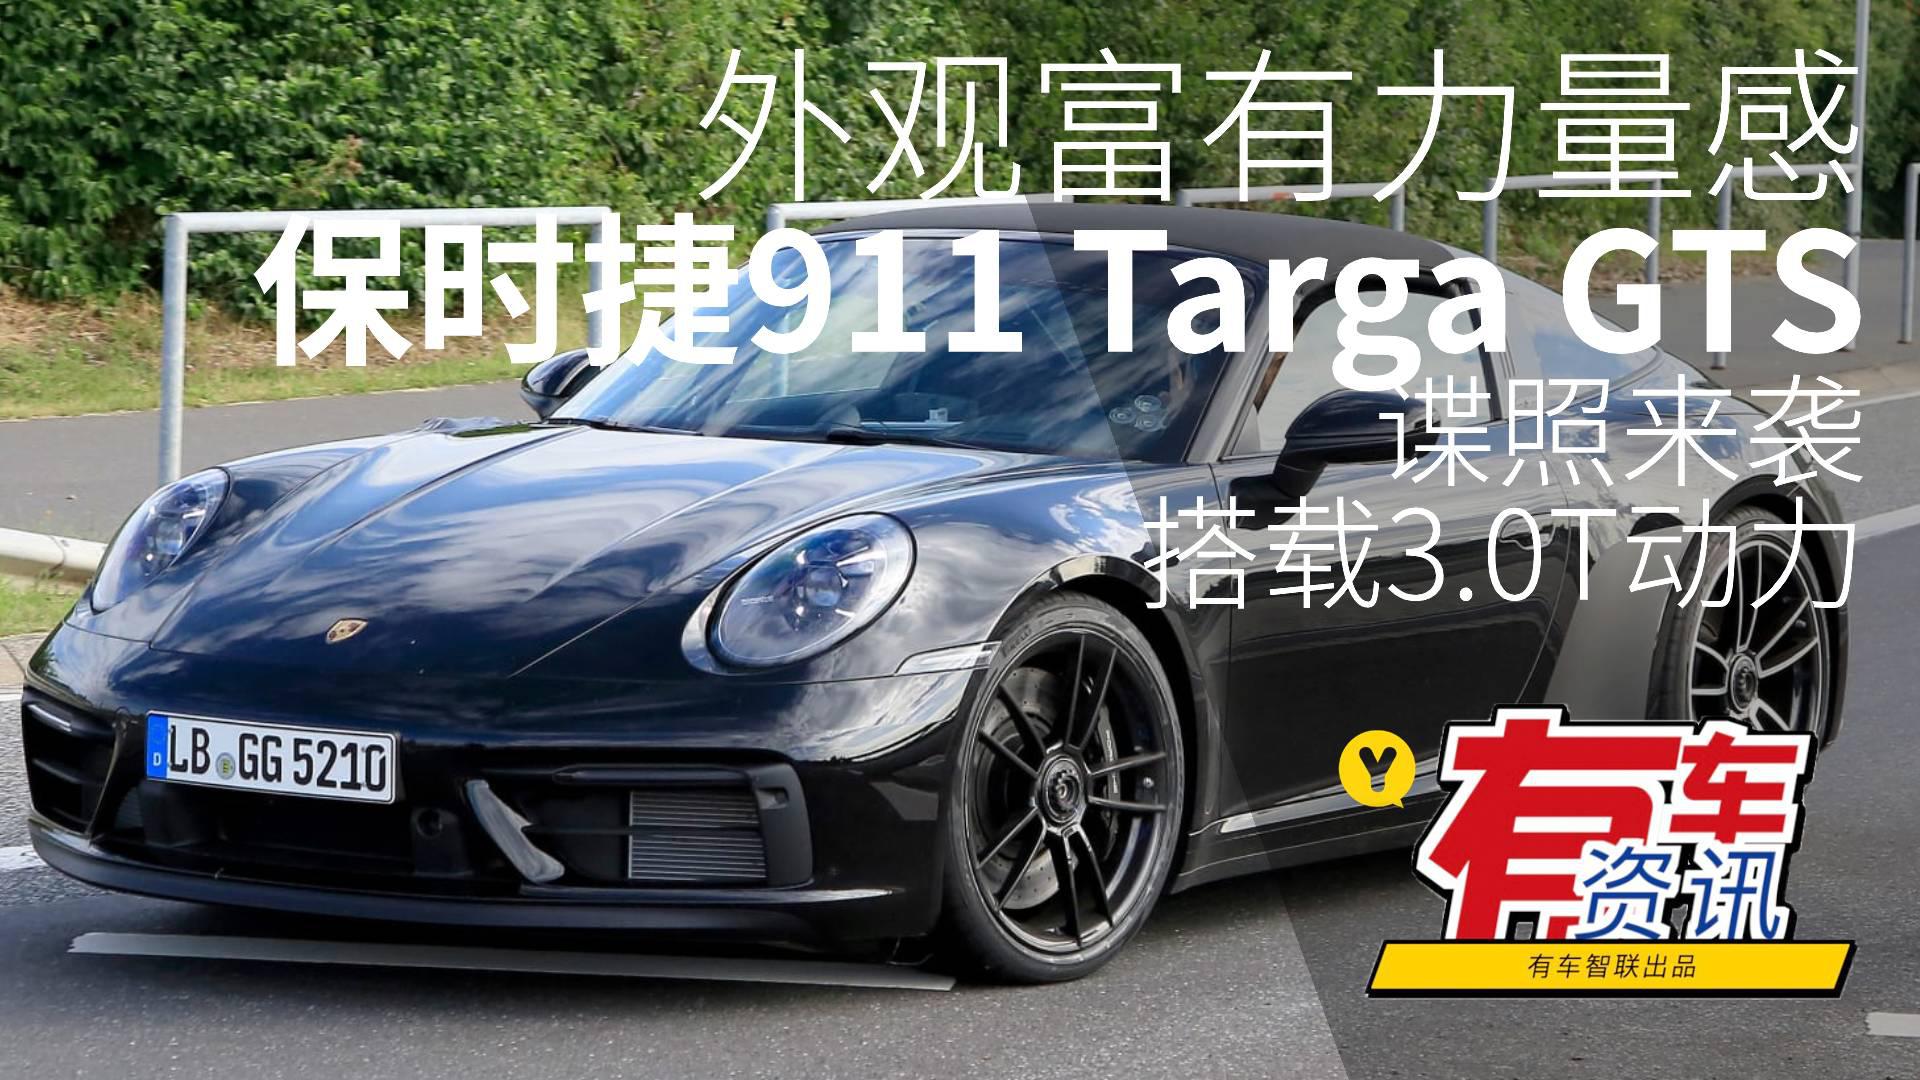 外观富有力量感 搭载3.0T动力 保时捷911 Targa GTS谍照来袭